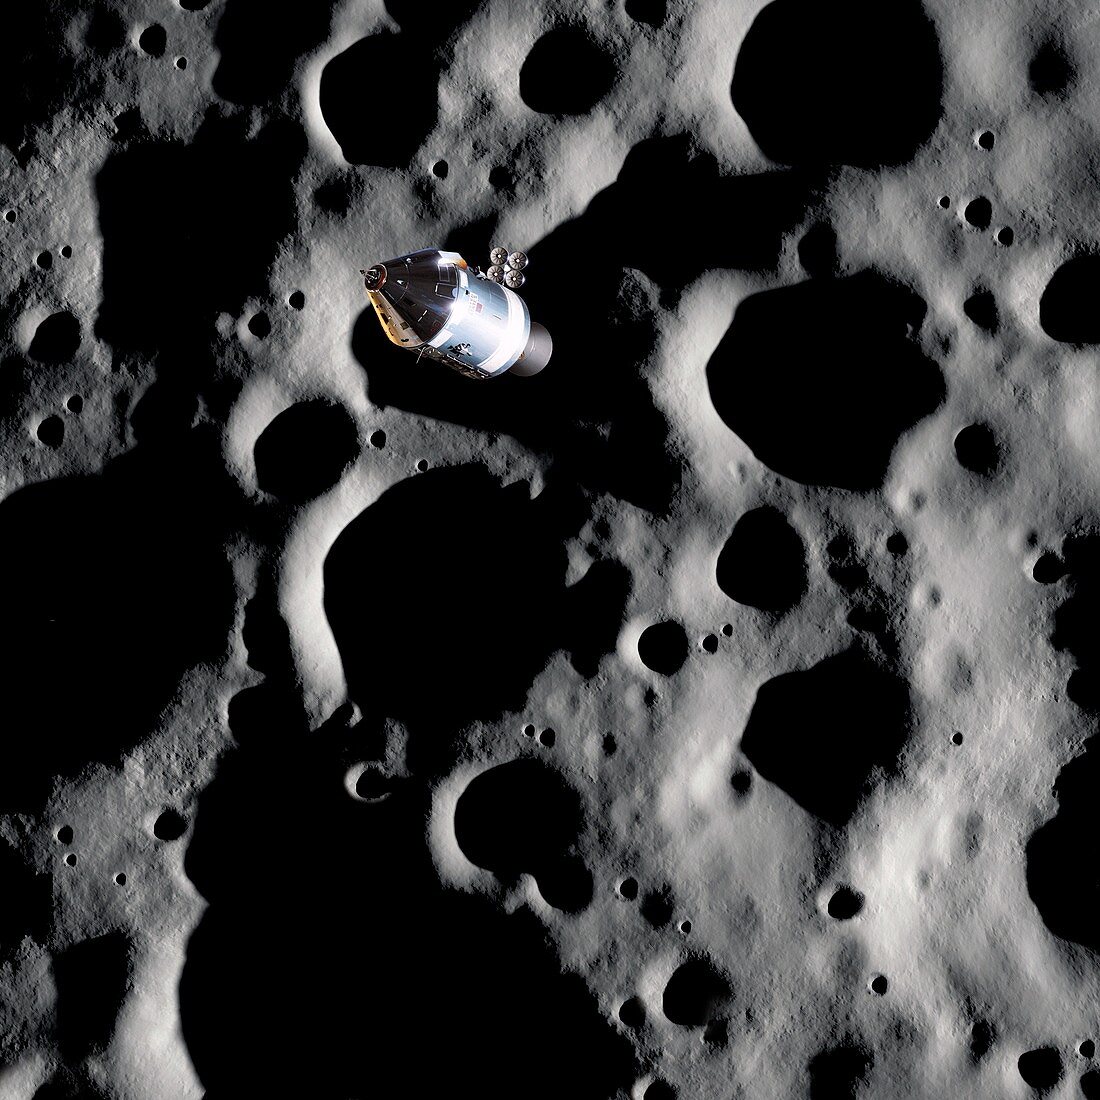 Apollo spacecraft in lunar orbit